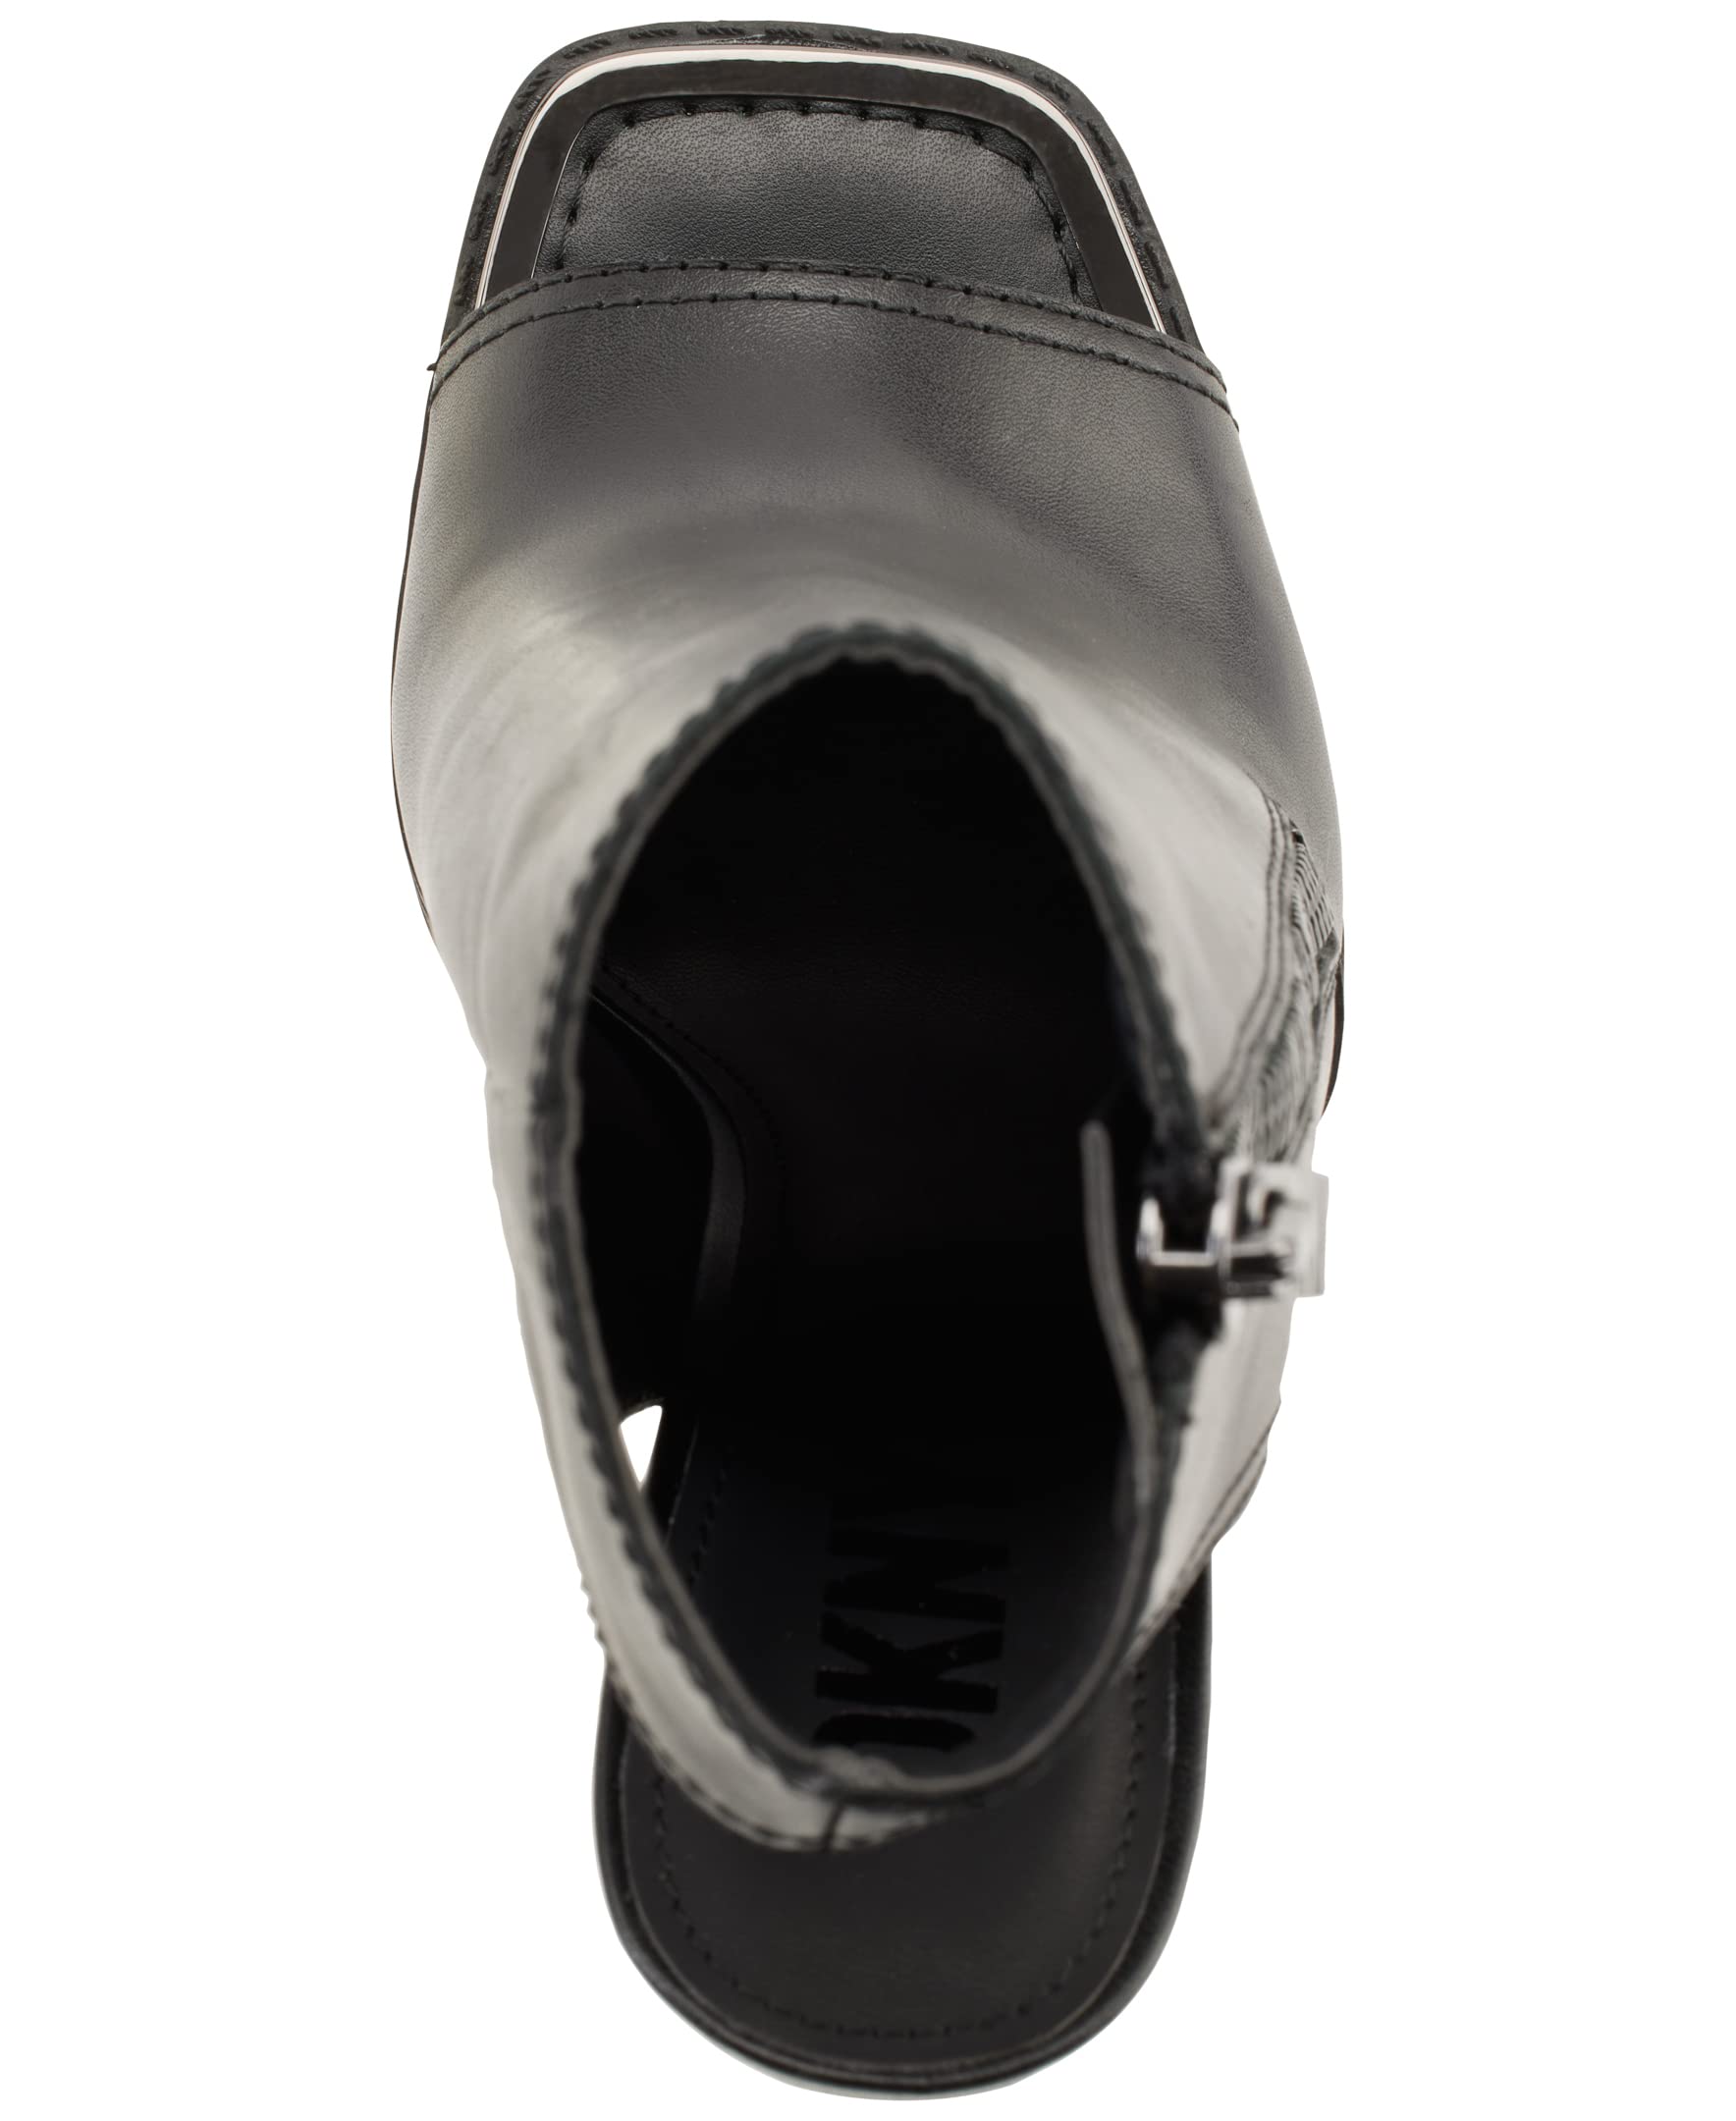 DKNY Women's Open Toe Rubber Sole Heeled Sandal Bootie Fashion Boot